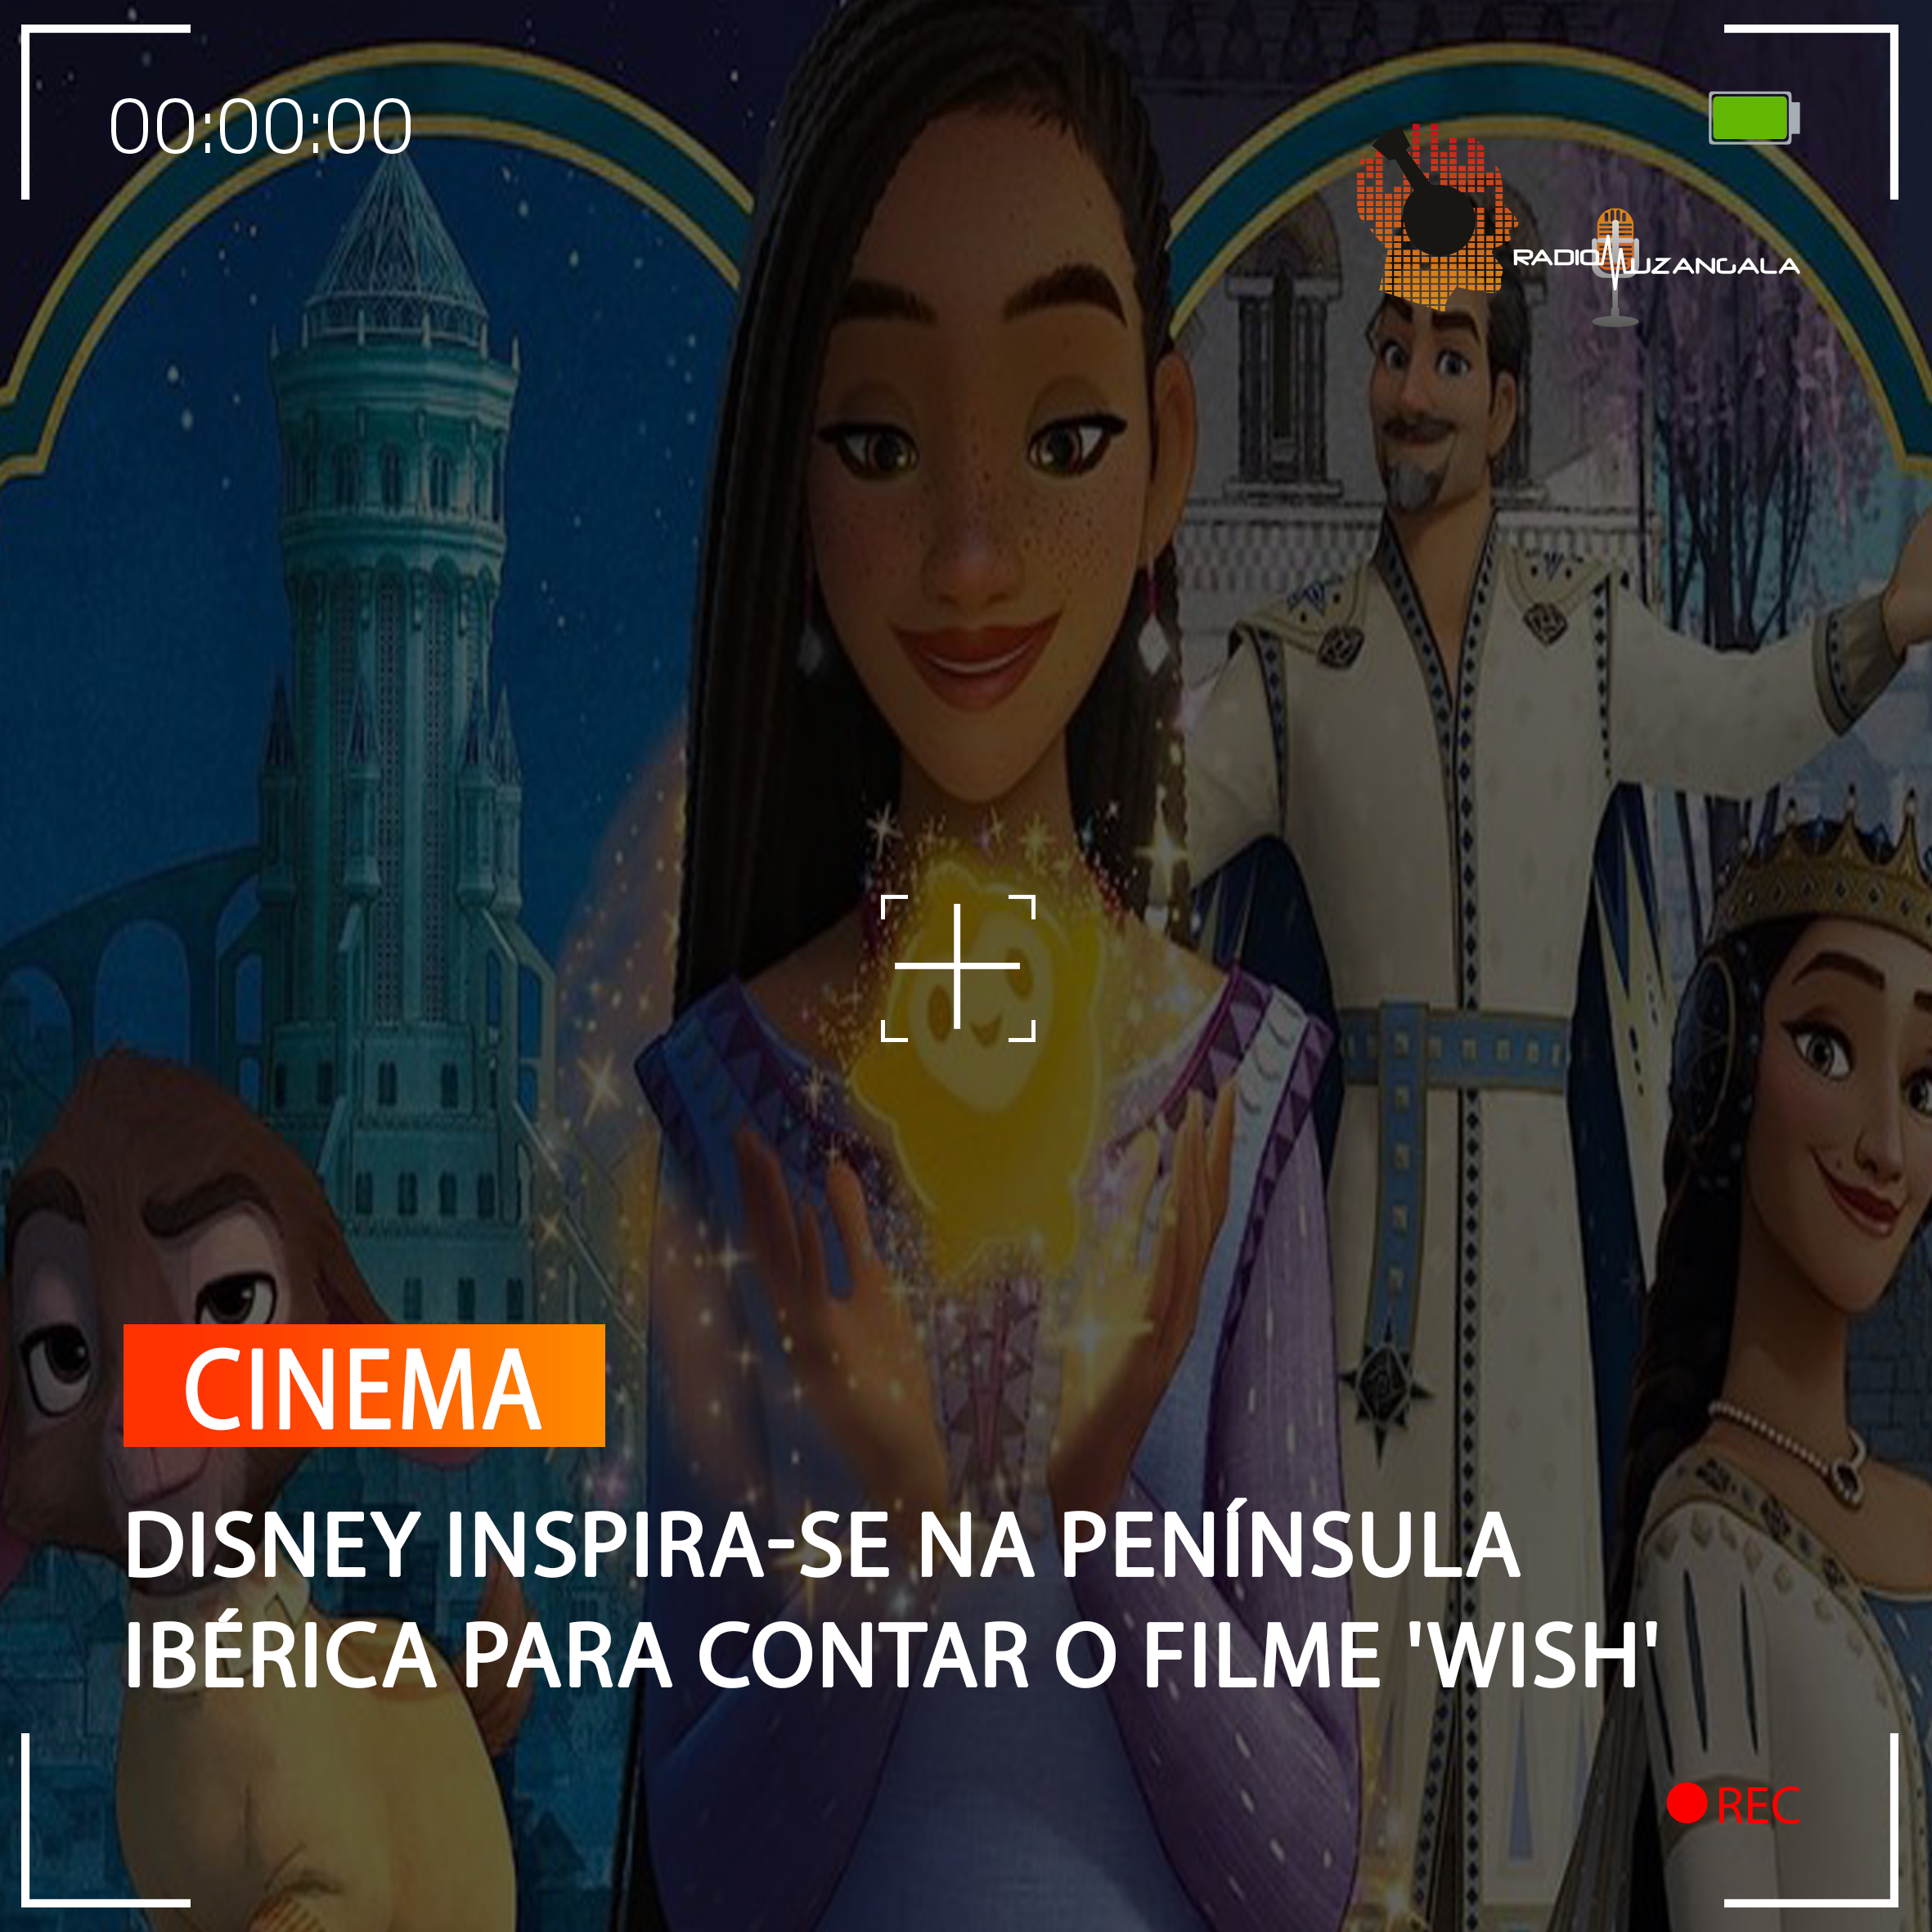  DISNEY INSPIRA-SE NA PENÍNSULA IBÉRICA PARA CONTAR O FILME ‘WISH’